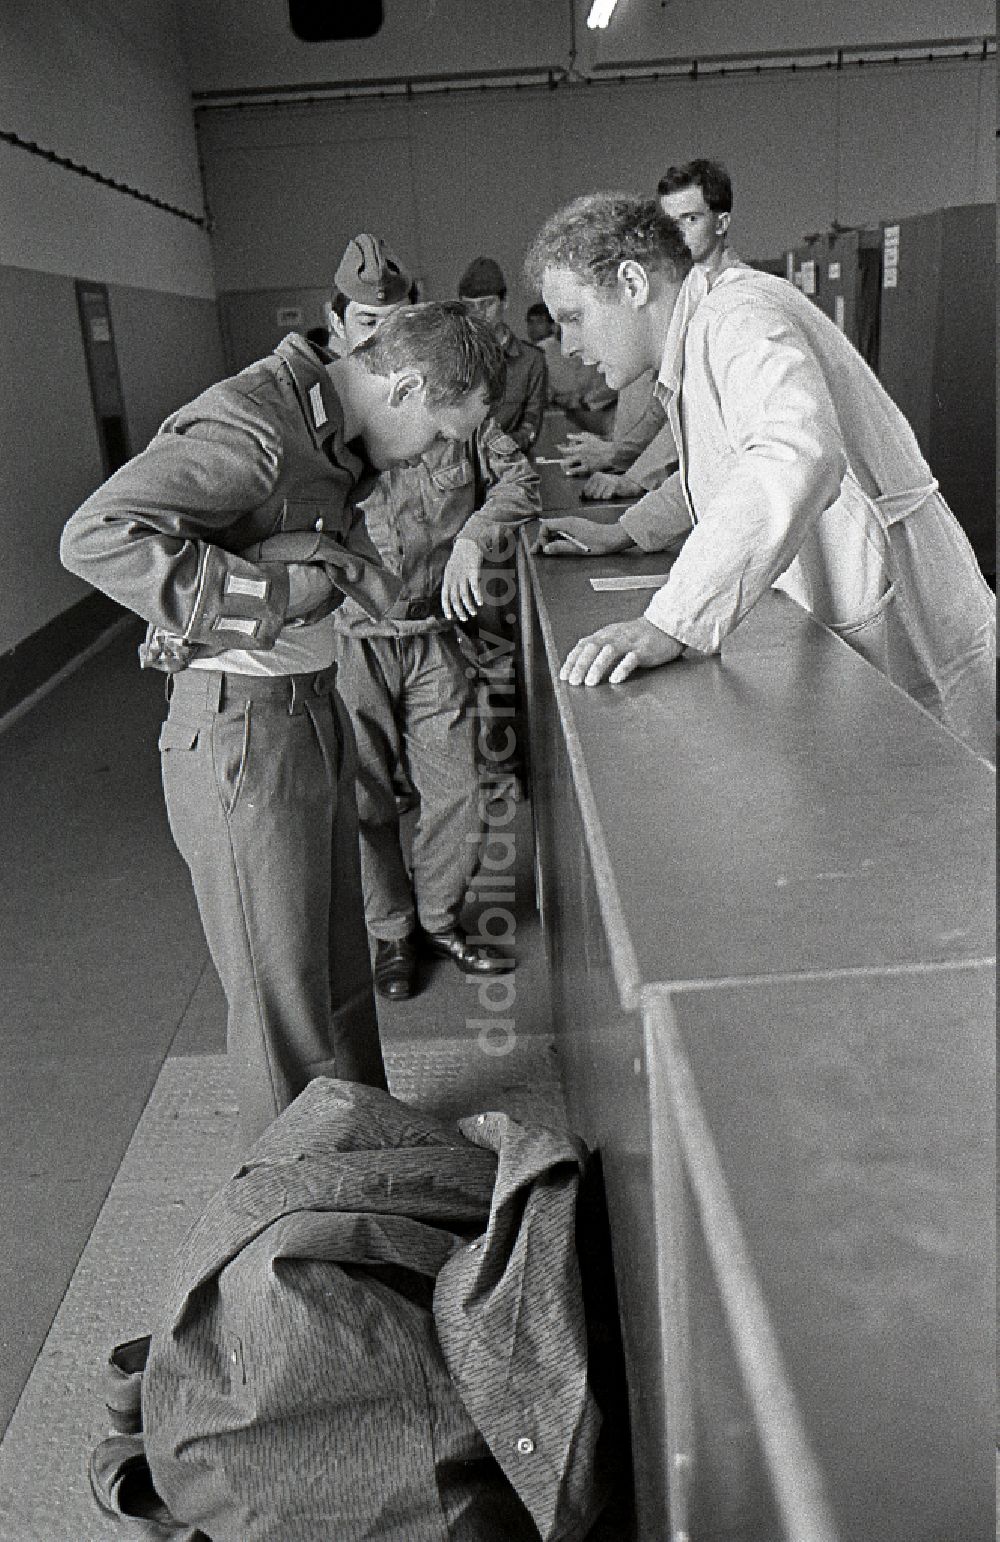 Lehnitz: Grundausbildung von Soldaten nach deren Einberufung zum Wehrdienst im Artillerieregiment AR-1 Rudolf Gyptner in Lehnitz in Brandenburg in der DDR